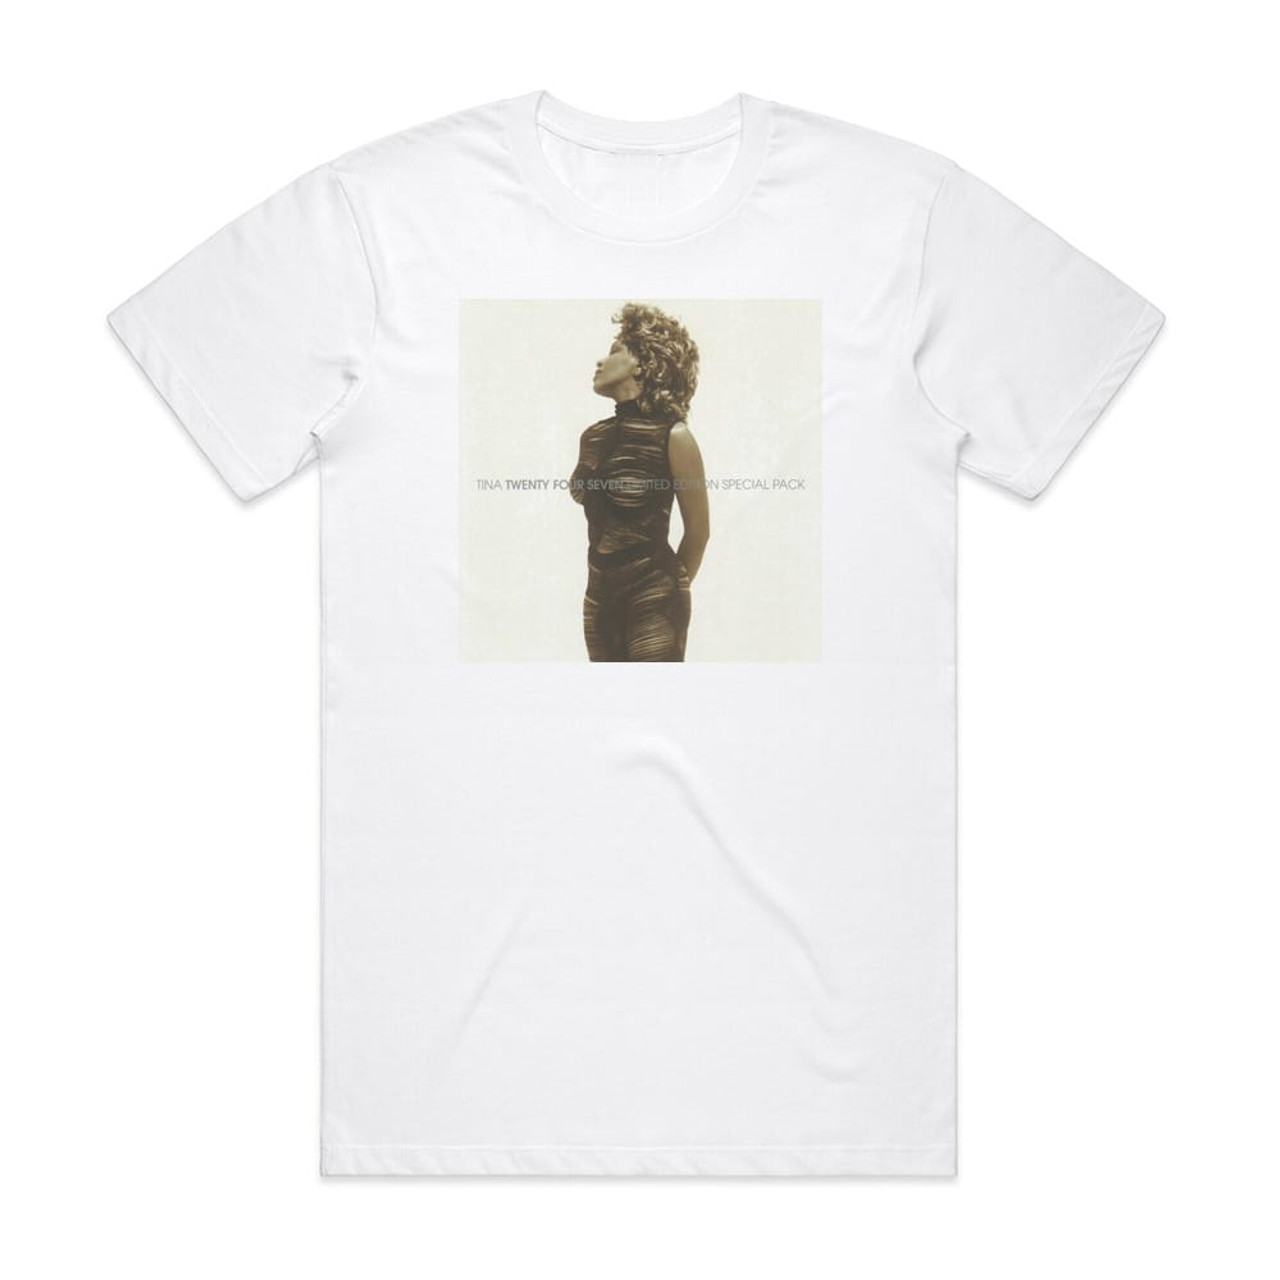 Tina Turner Twenty Four Seven Album Cover T-Shirt White